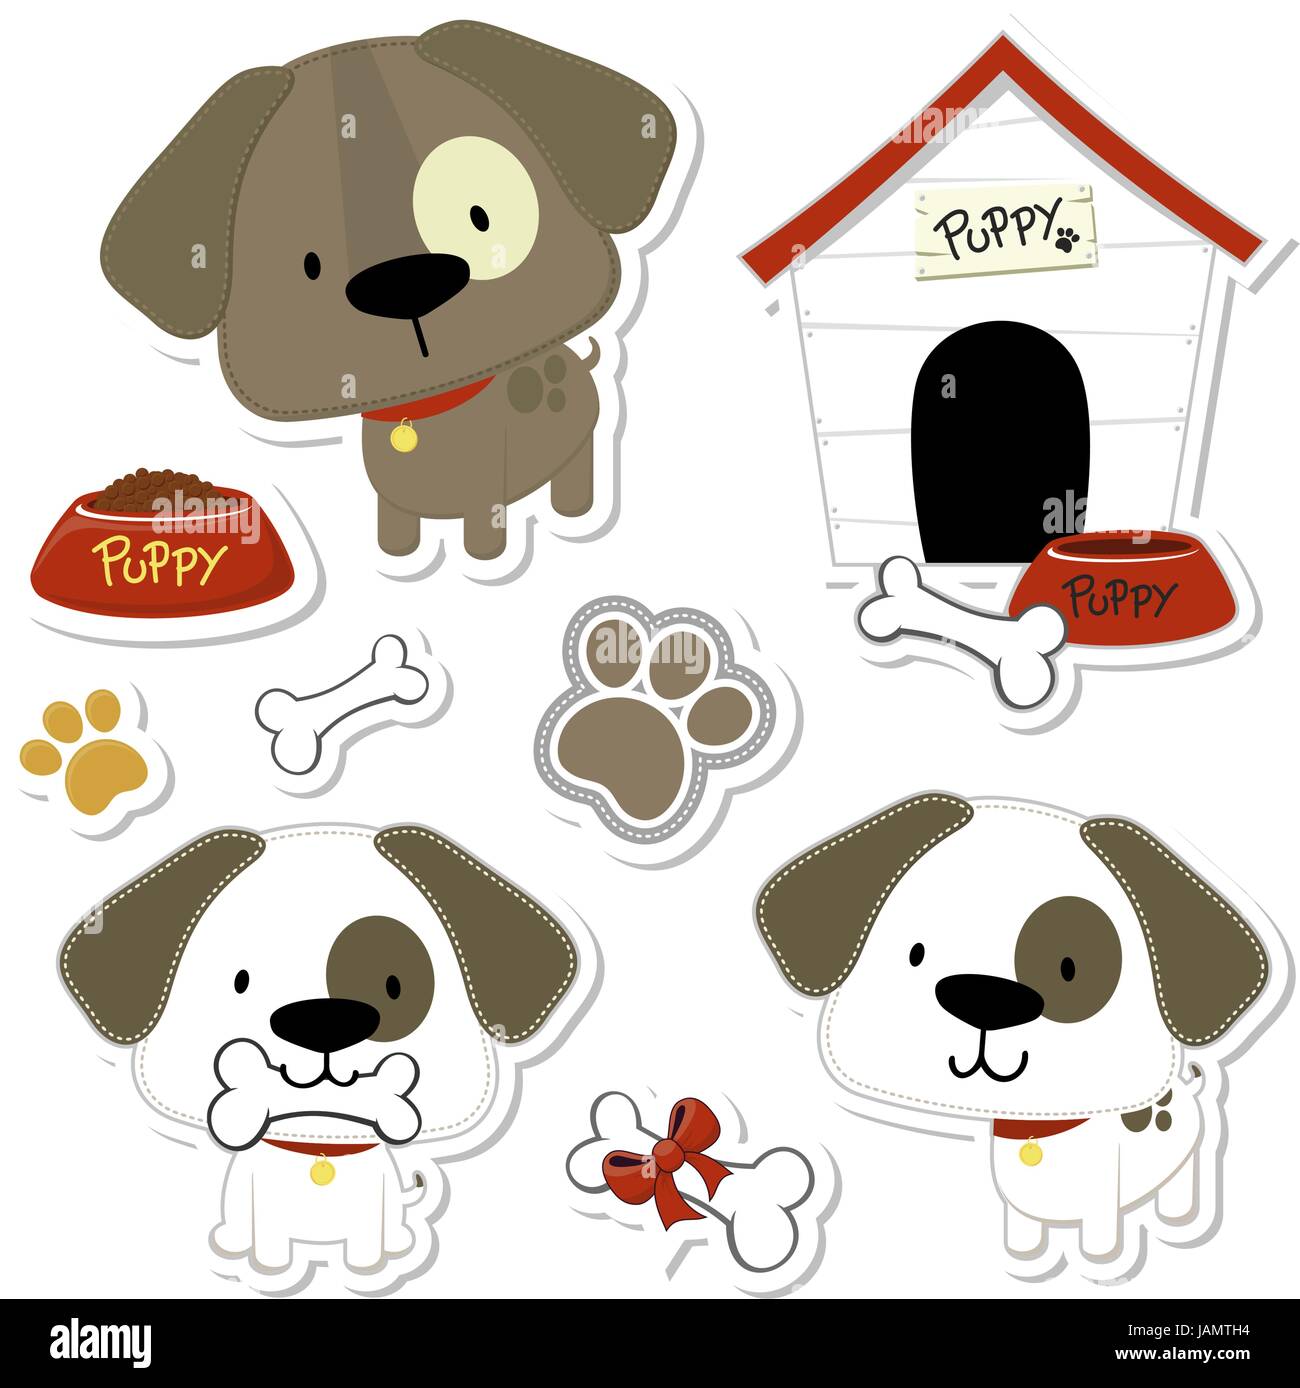 Serie di divertenti baby cani e cucciolo elementi come adesivi, utile per molte applicazioni, i vostri disegni o progetti di Scrapbooking Illustrazione Vettoriale